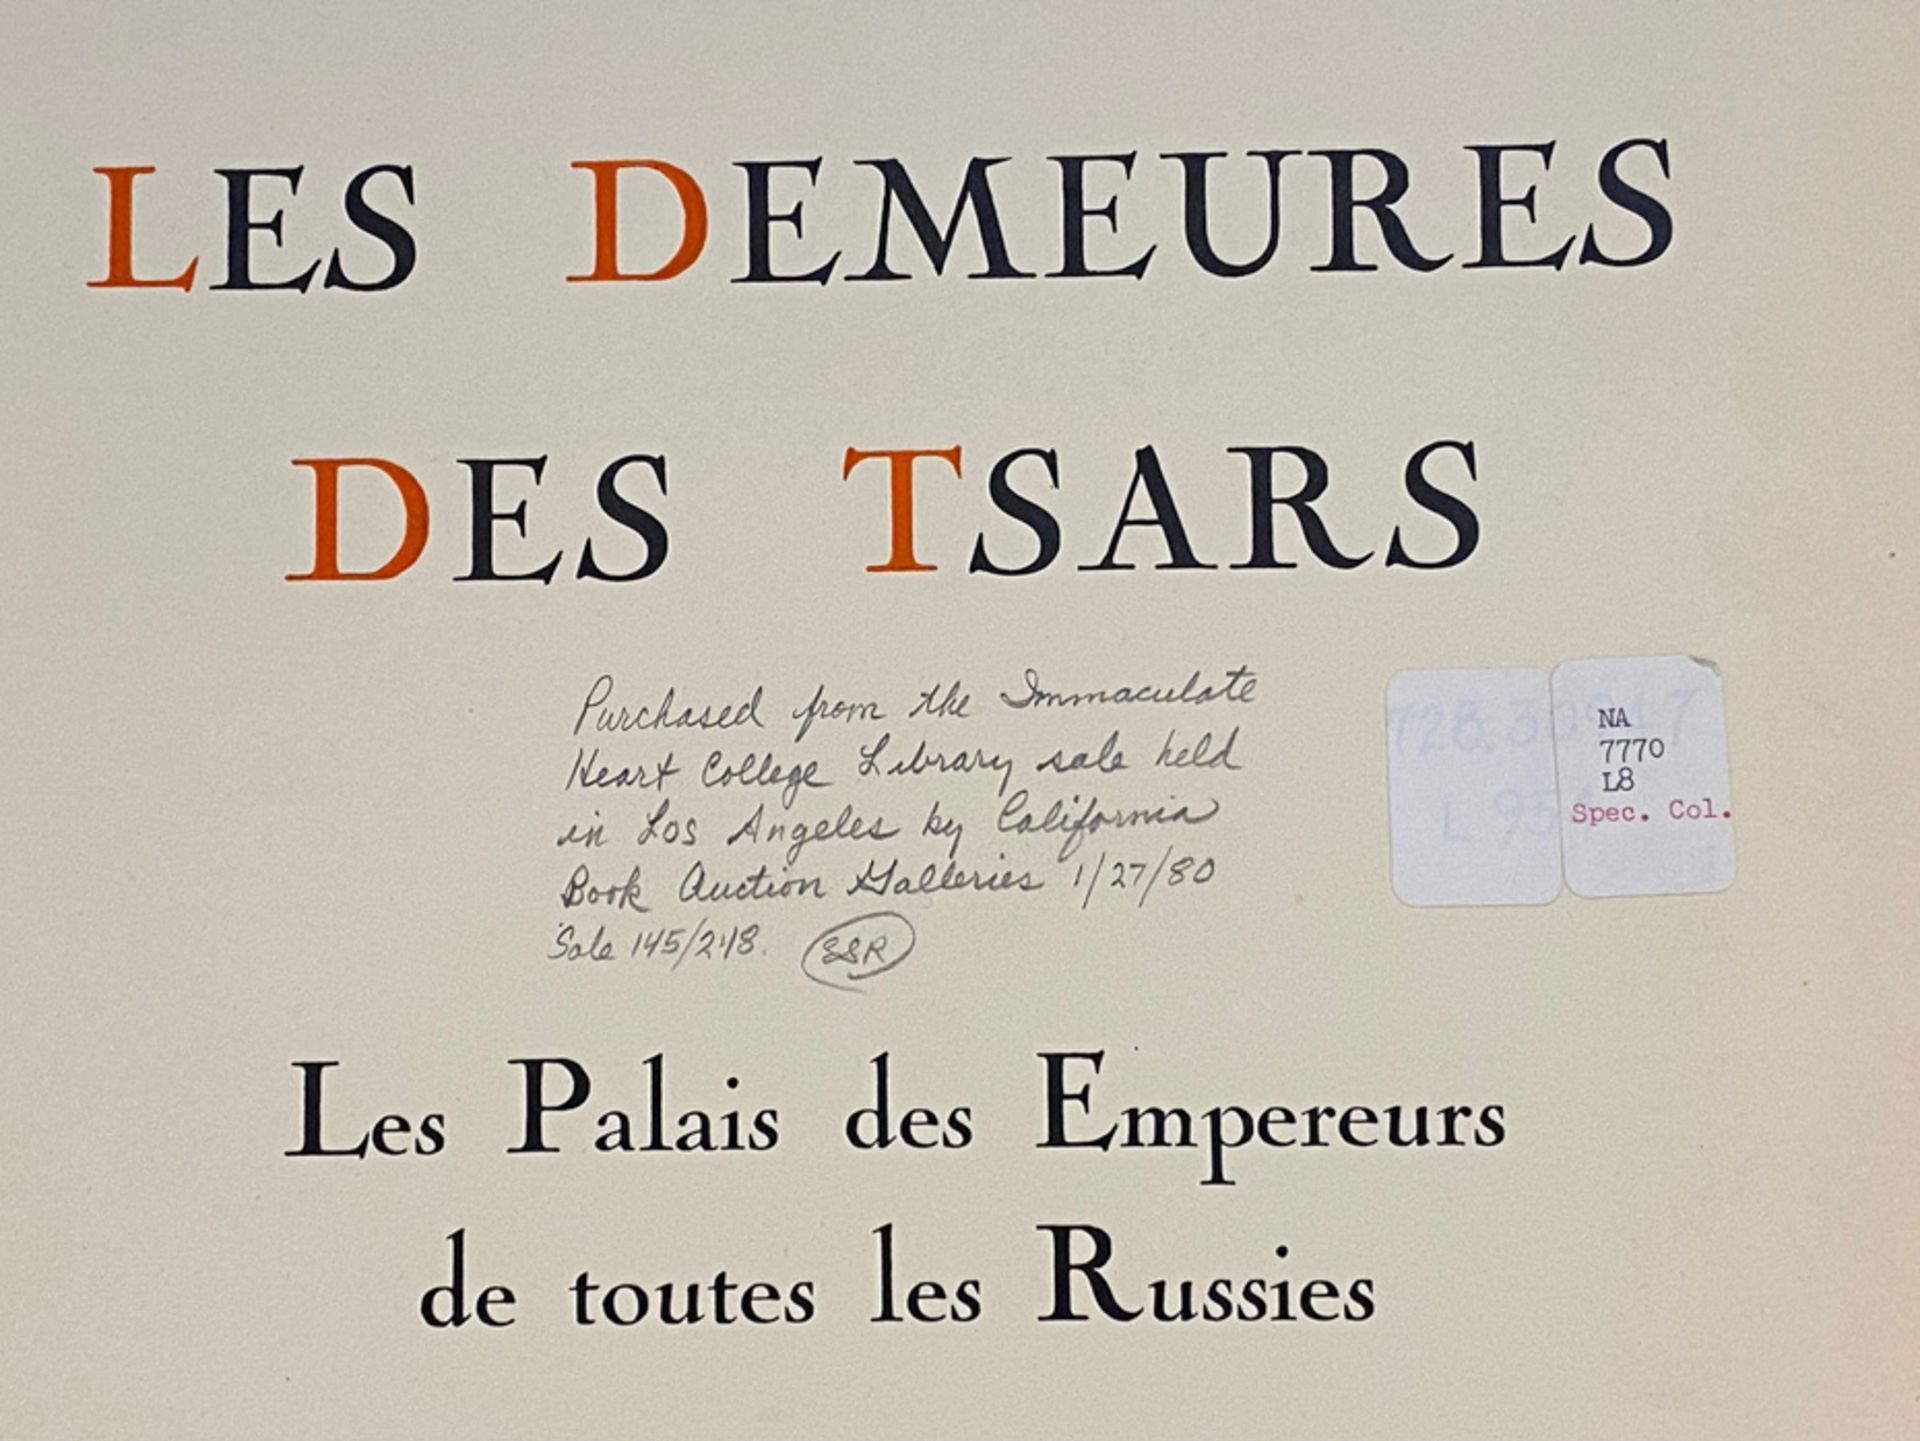 LOUKOMSKI, G.K., LES DEMEURES DES TSARS, PARIS 1929 - Image 8 of 17